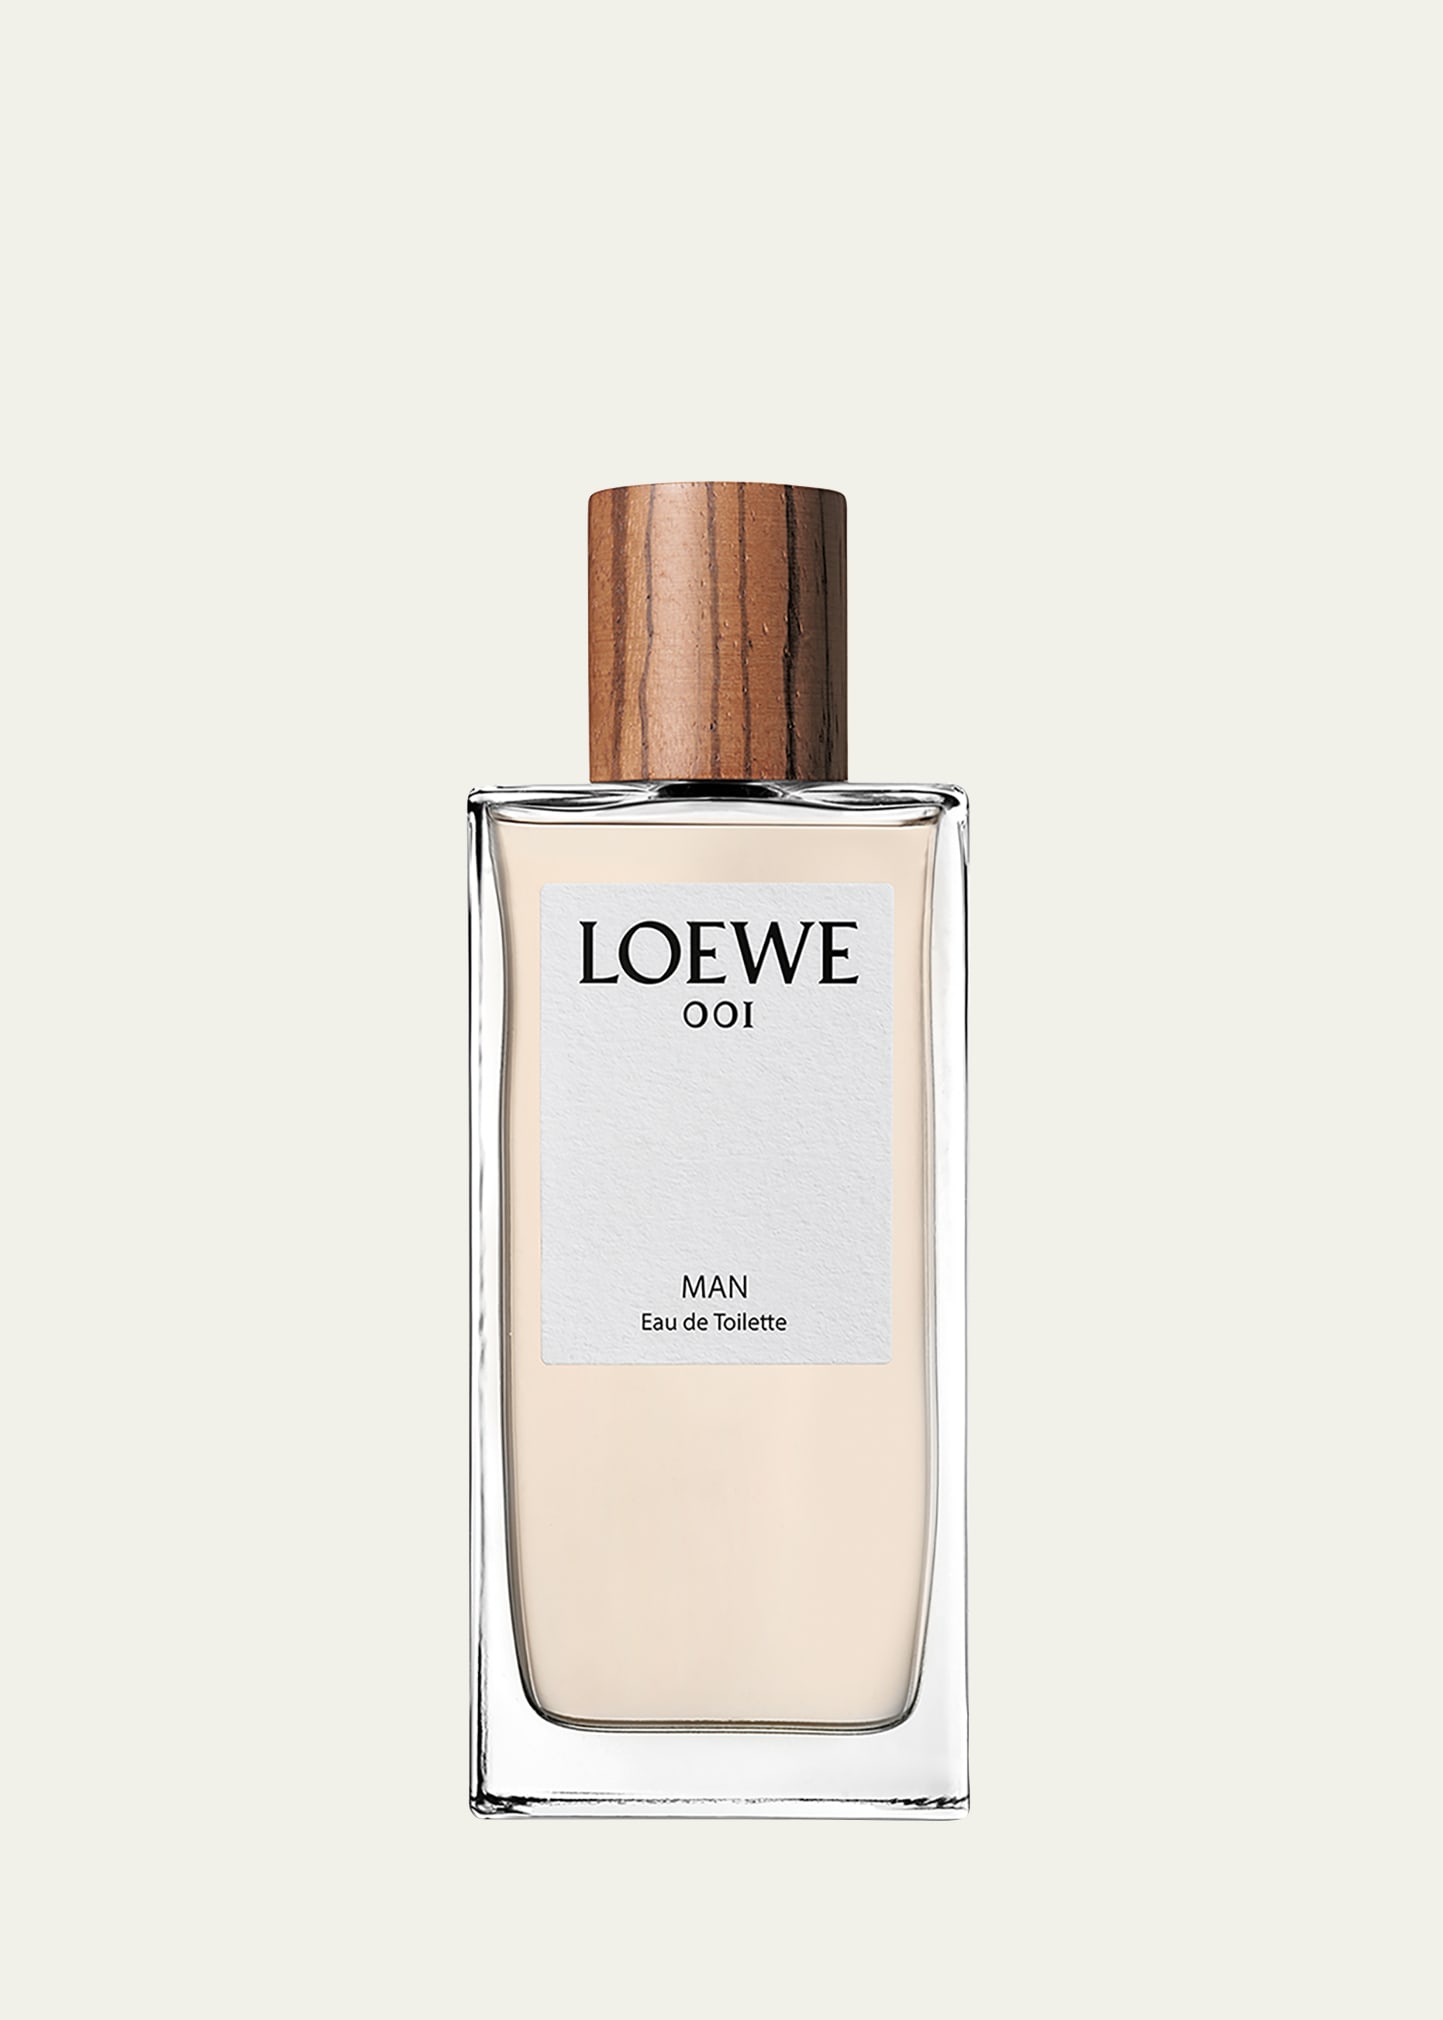 Loewe 3.4 oz. 001 Man Eau de Toilette